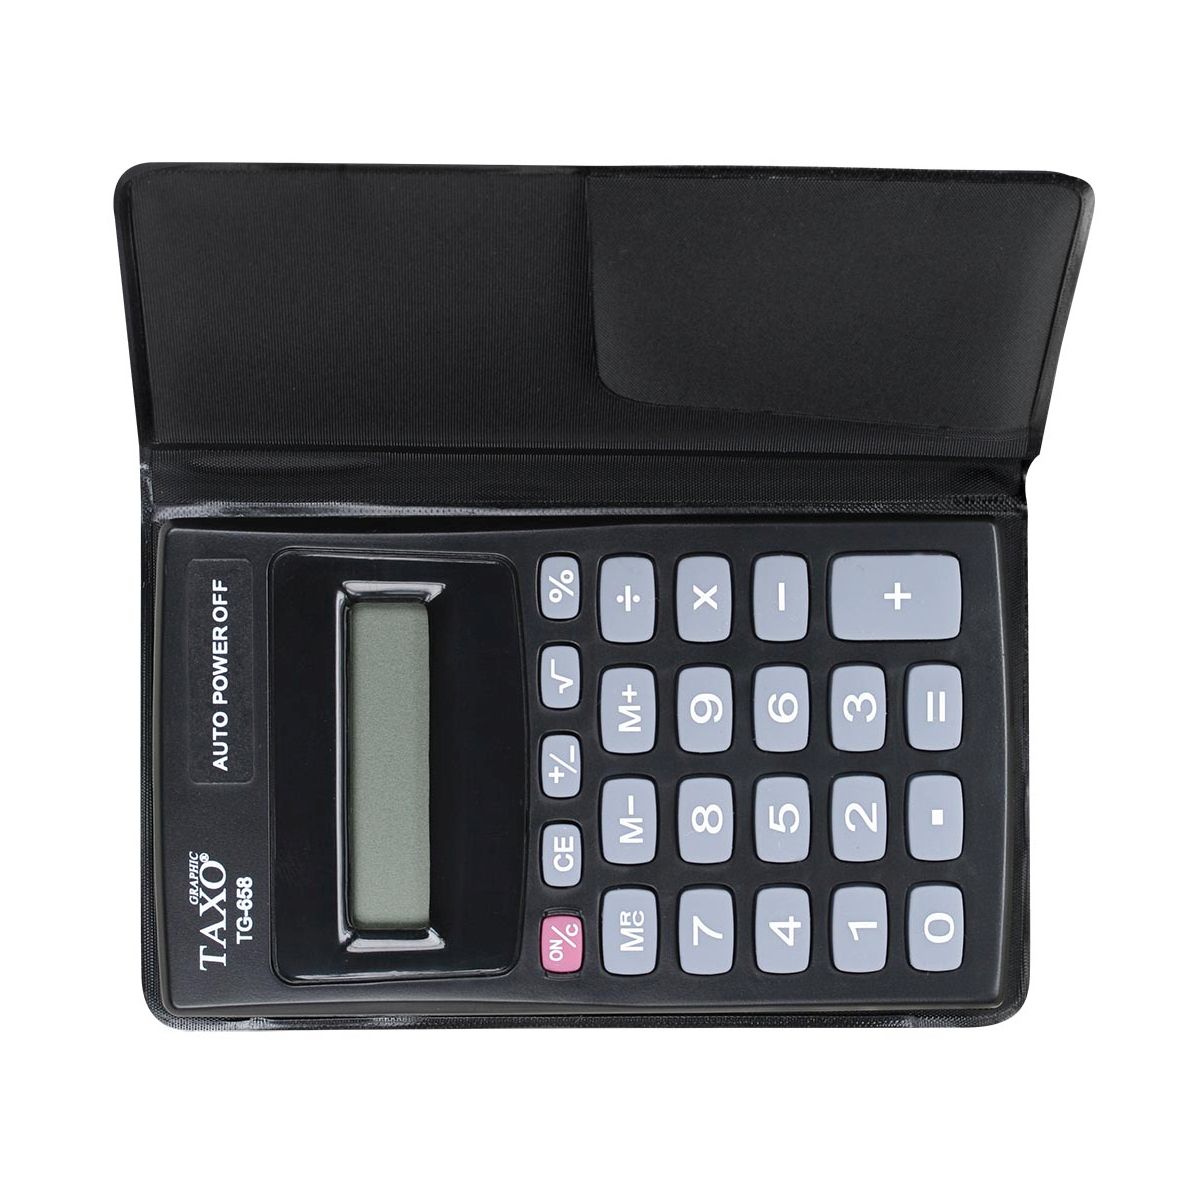 Kalkulator kieszonkowy TG-658 Taxo Graphic 8-pozycyjny